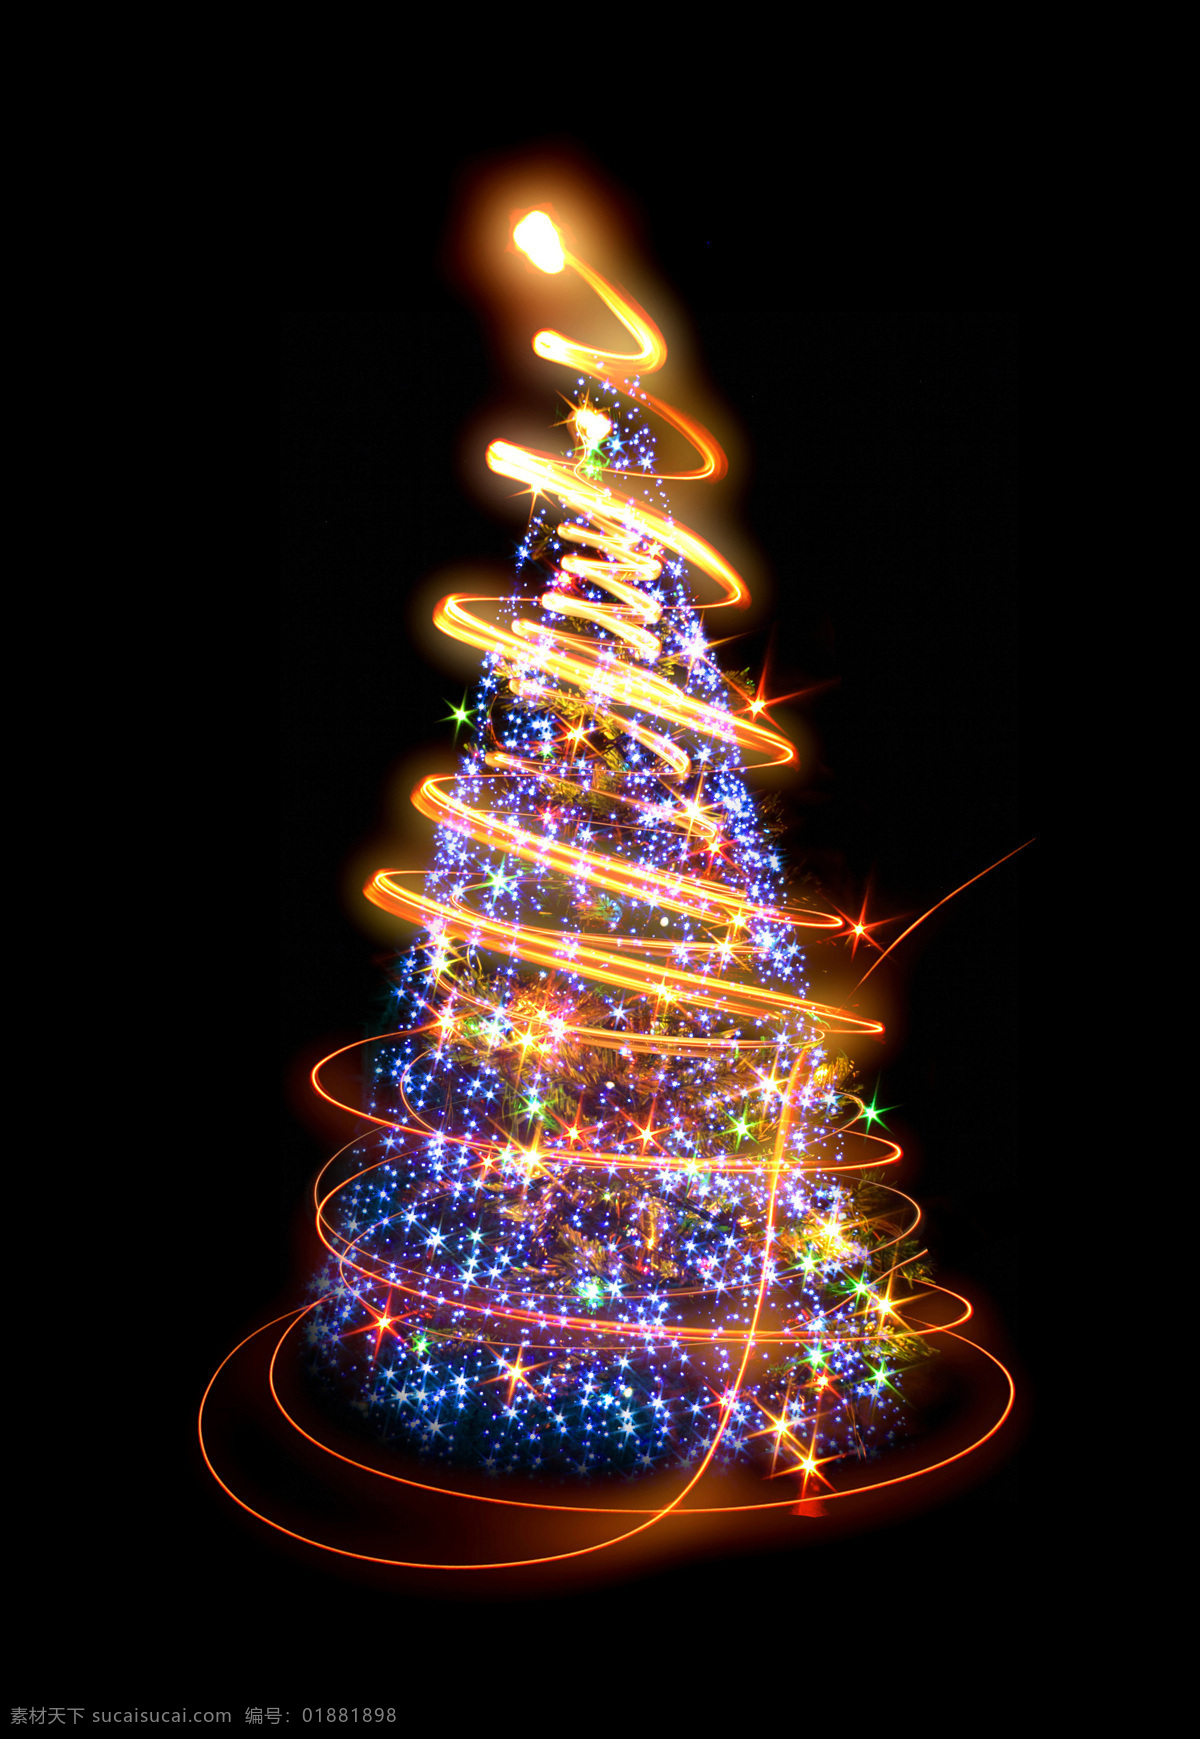 梦幻 圣诞树 圣诞 圣诞节 节日 喜庆 圣诞素材 星光 动感线条 节日庆典 生活百科